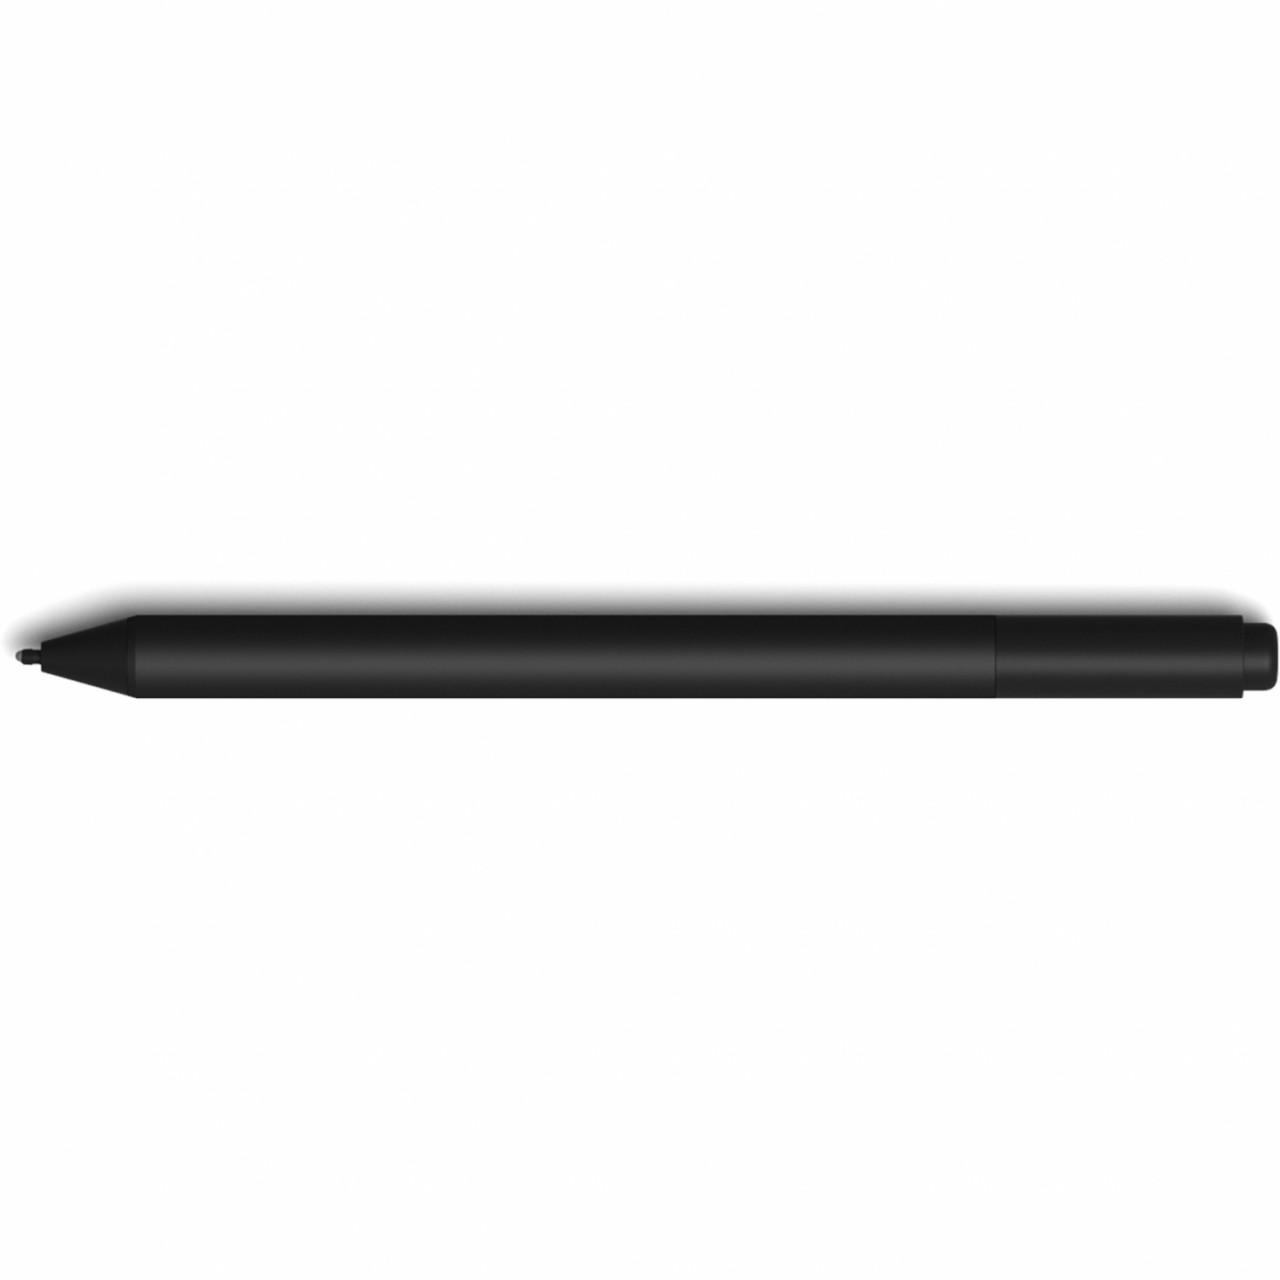 Microsoft Surface Pen Eingabestift 20 g Anthrazit